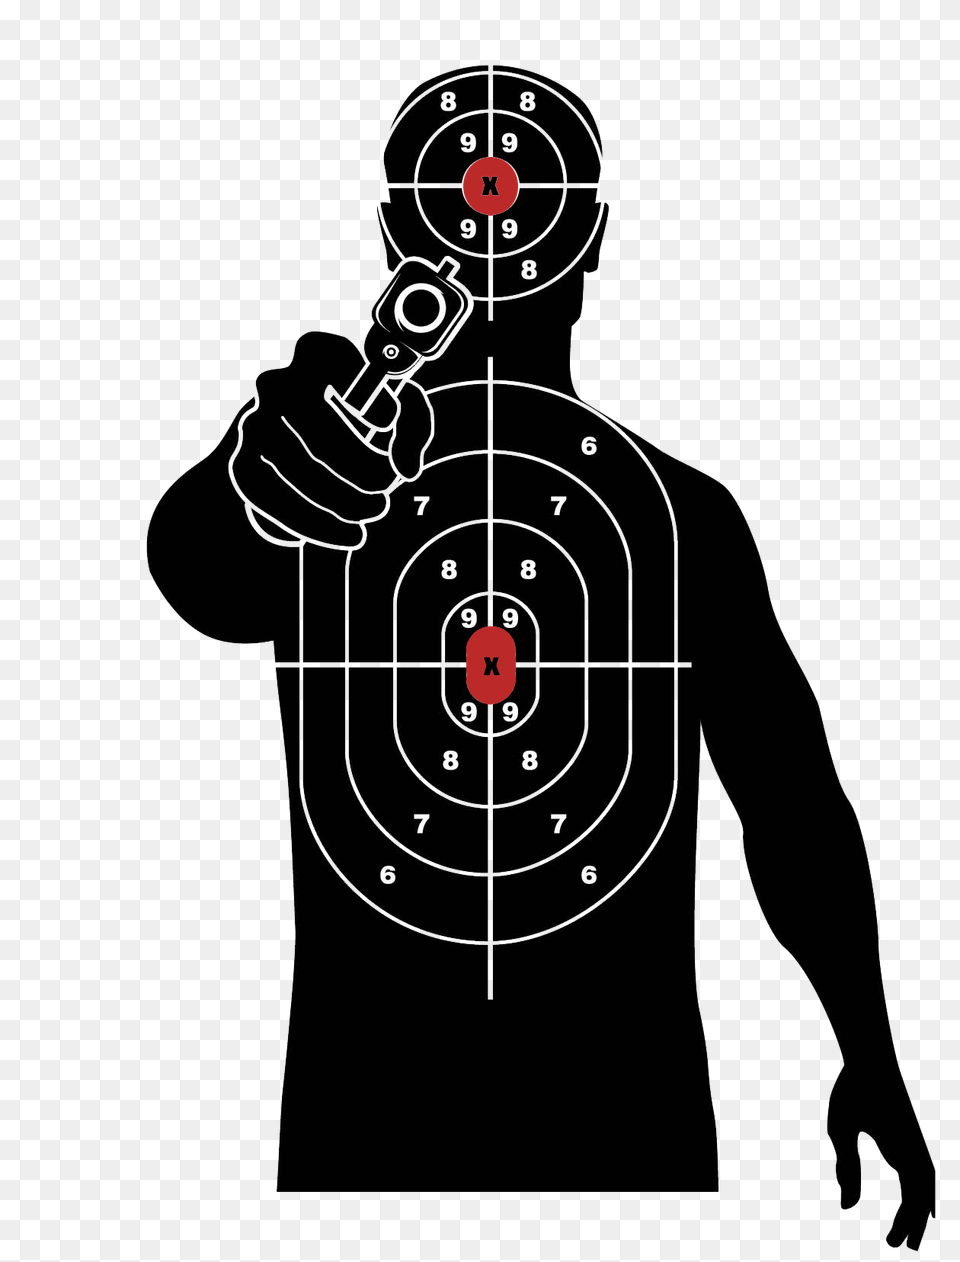 Target, Gun, Shooting, Weapon, Adult Png Image